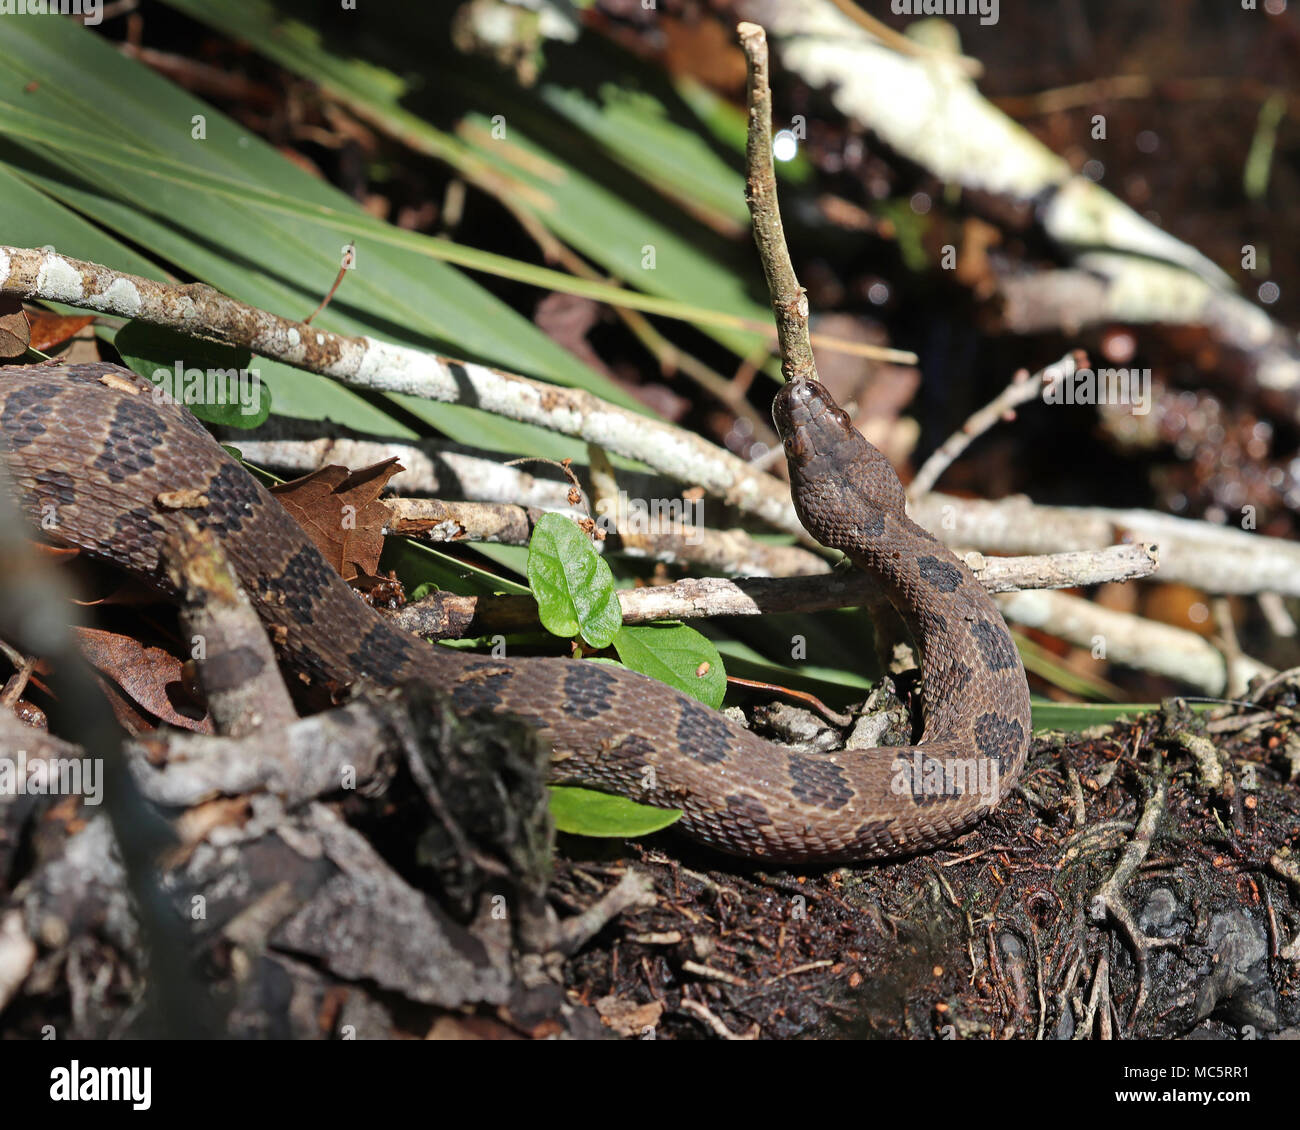 Brown des serpents d'eau sont une nonvenomous rhizodontiformes souvent trouvés le long des bords des rivières et des lacs dans les états du sud. Banque D'Images